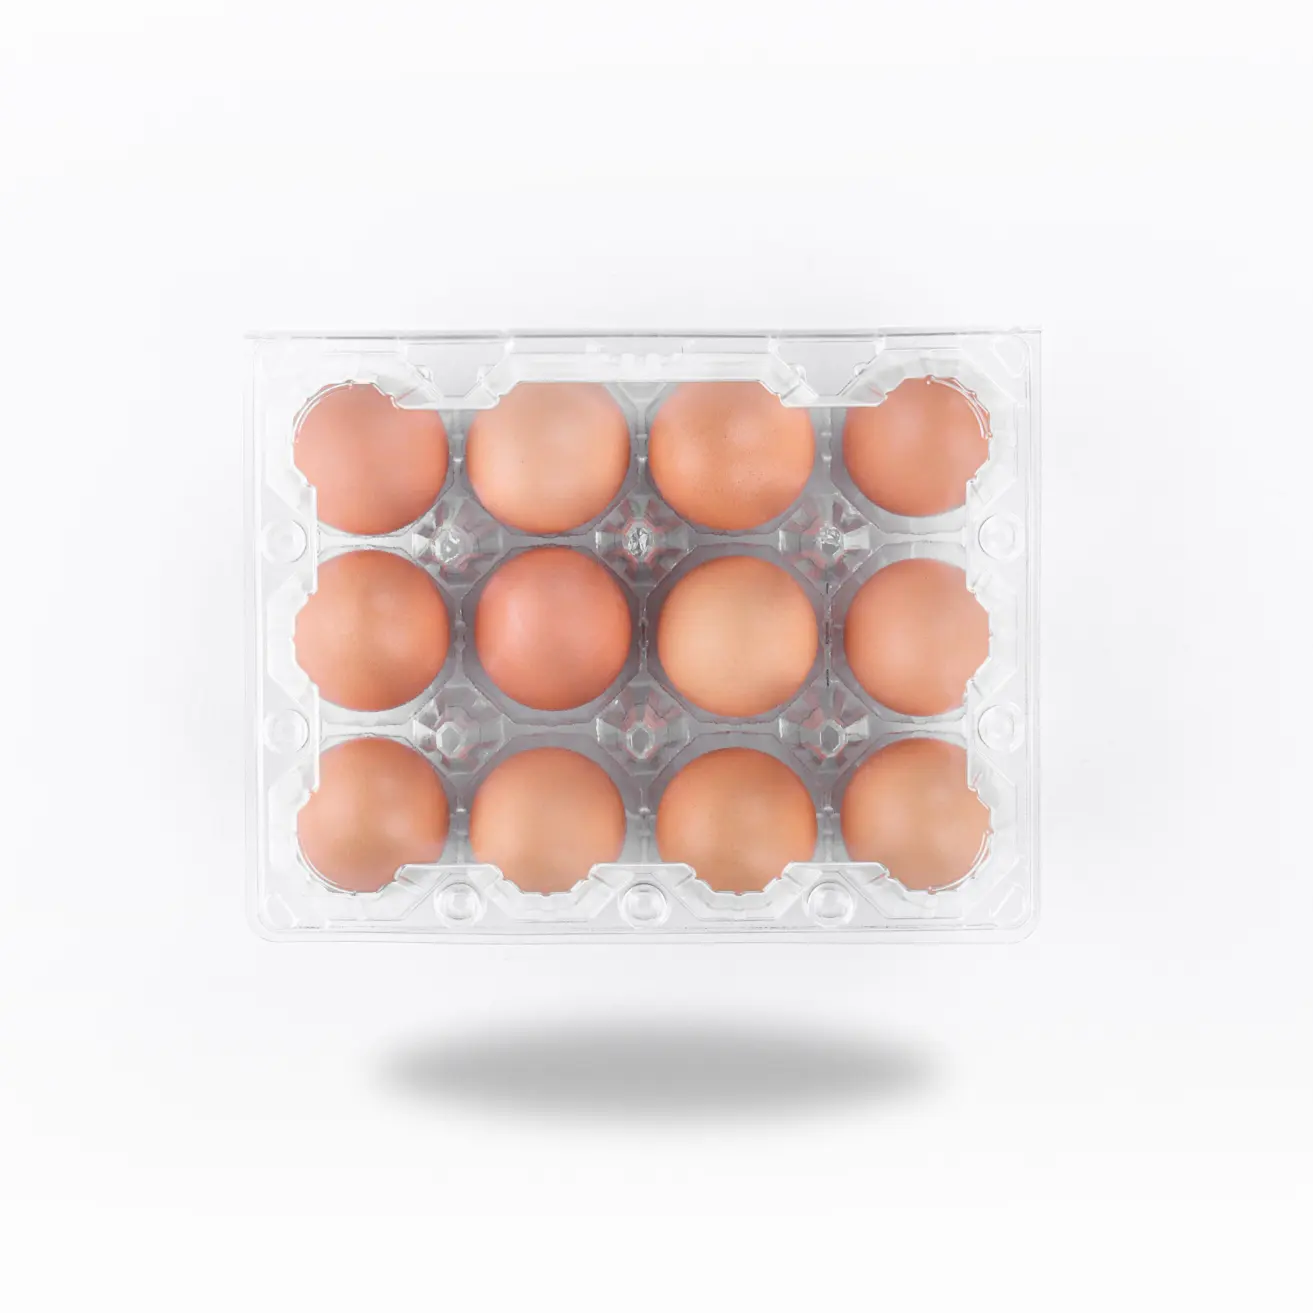 Venta al por mayor de cajas de cartón de huevos de plástico transparente 3*4